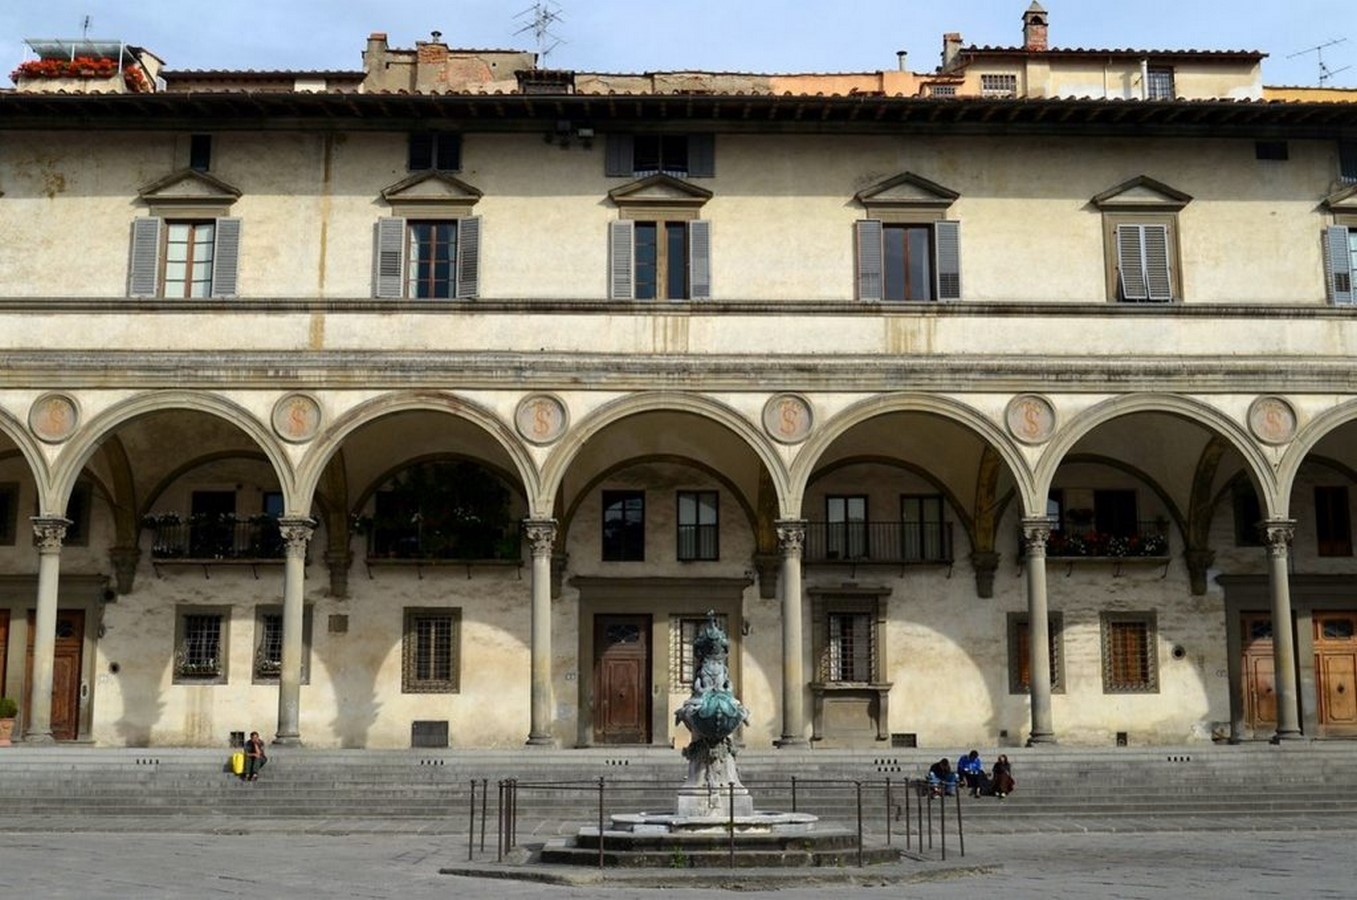 Arquitectura Barroca a través de 10 edificios en Florencia- sheet19